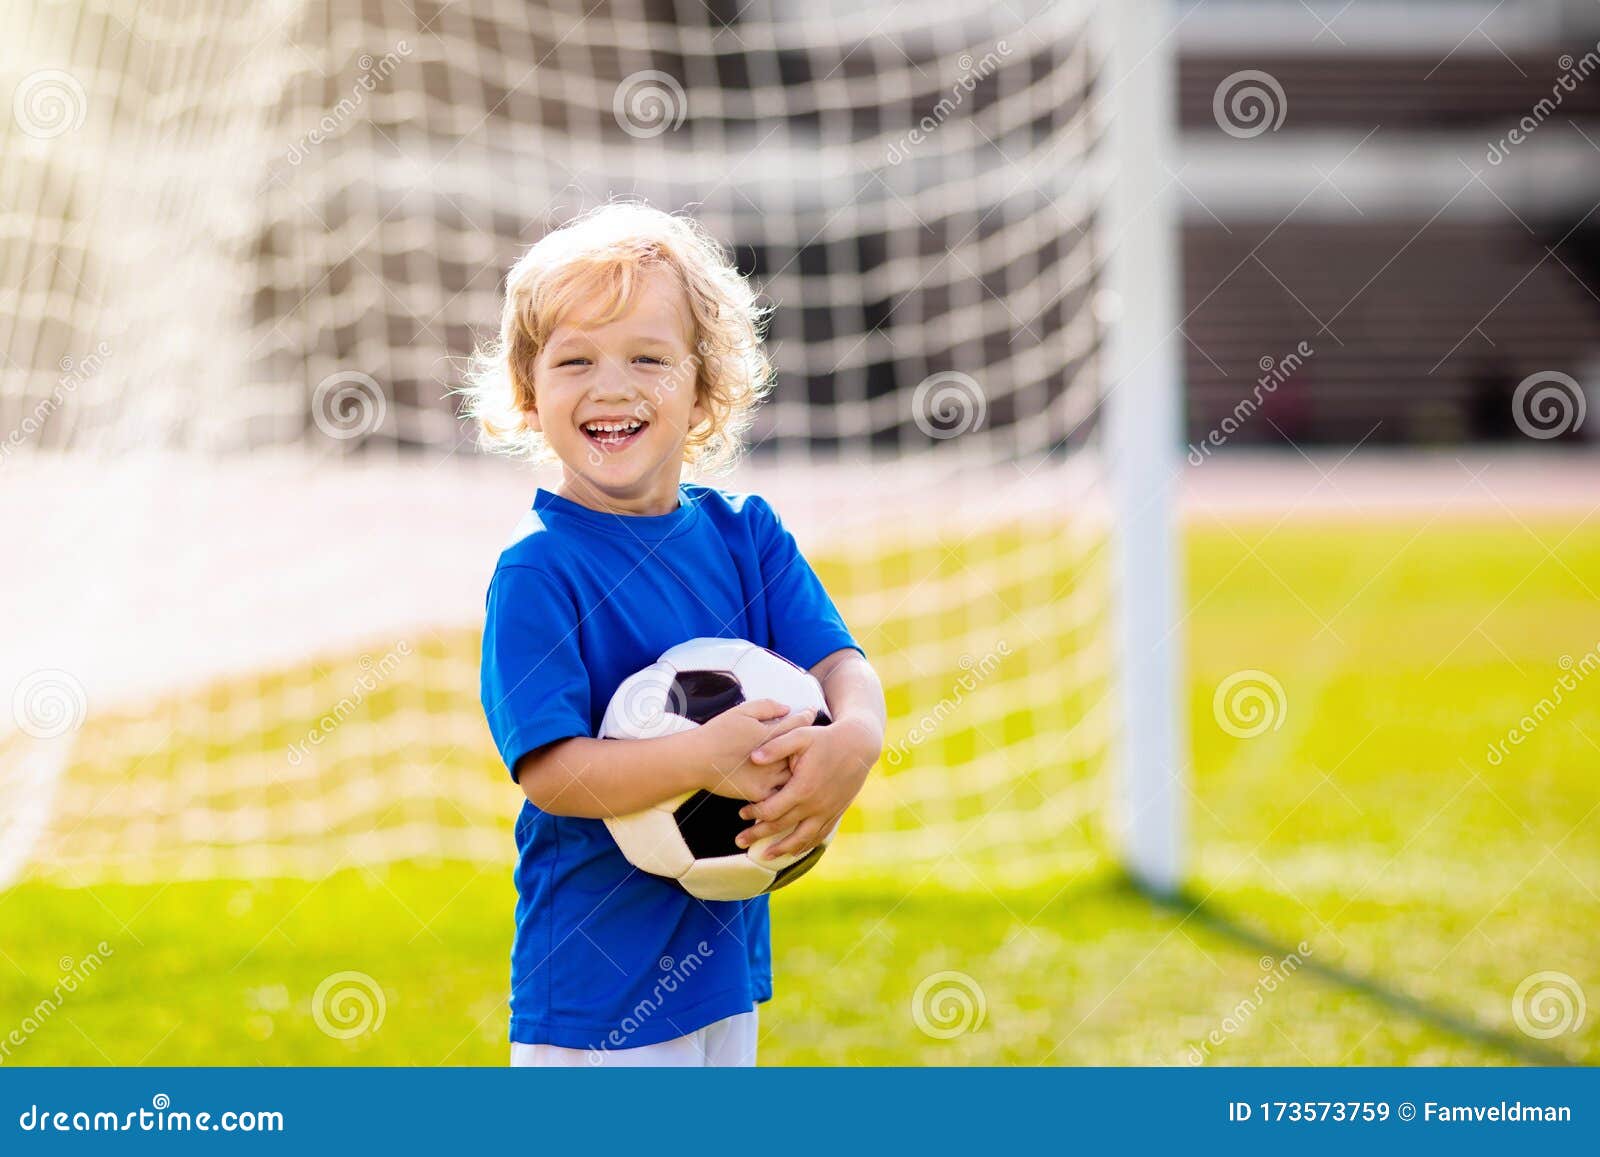 Les Enfants Jouent Au Football. Enfant Au Terrain De Football